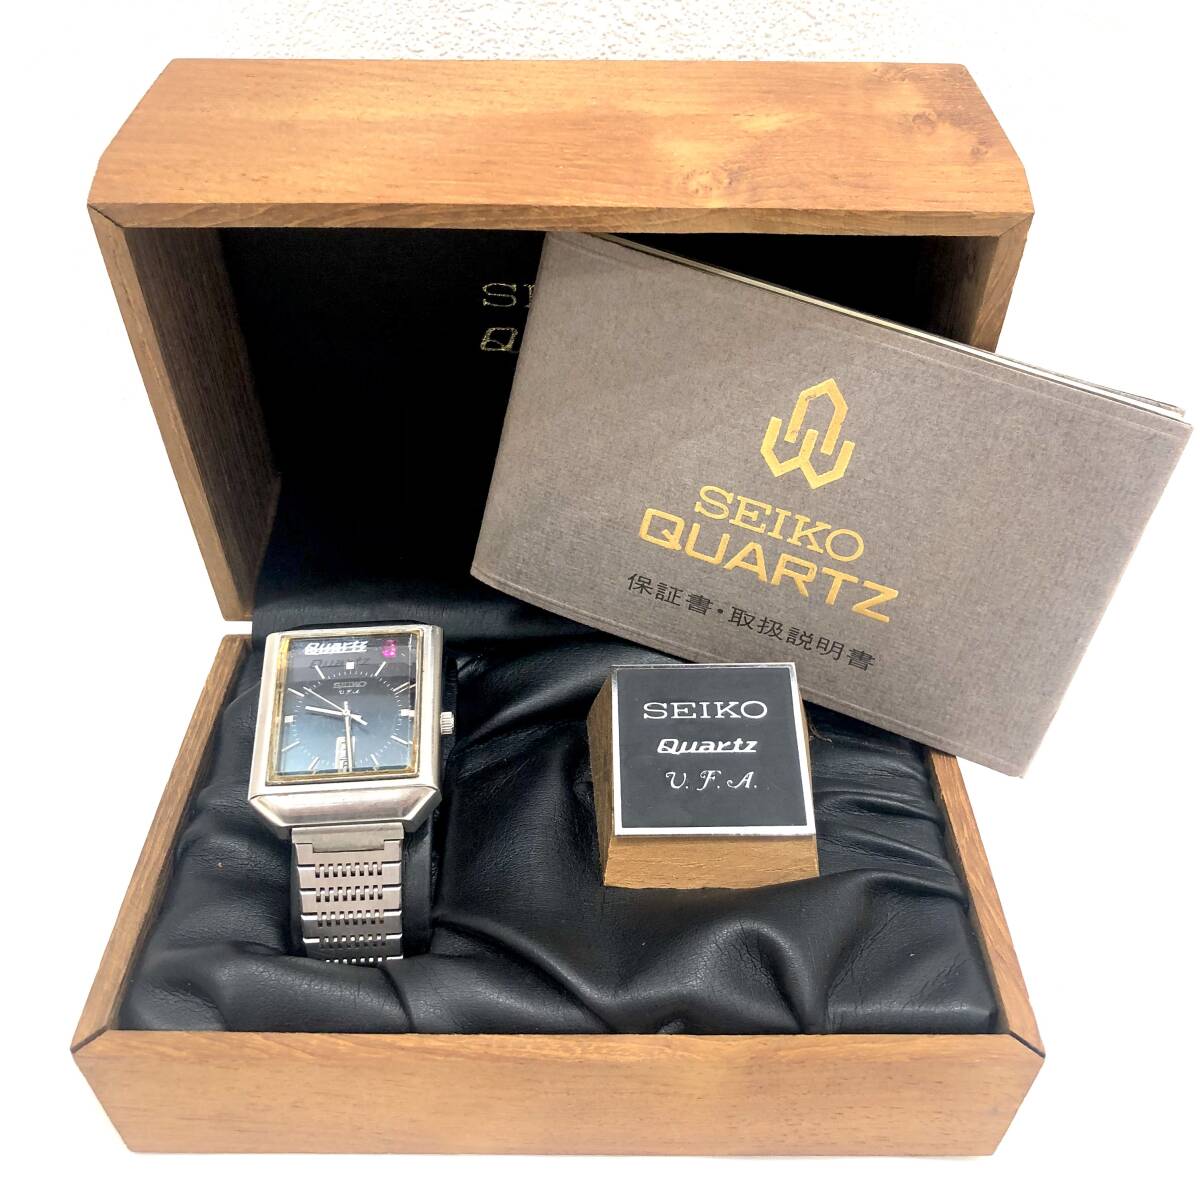 (M4043) SEIKO QUARTZ VFA 水晶発振式腕時計 セイコー クオーツ 木製BOX付の画像1